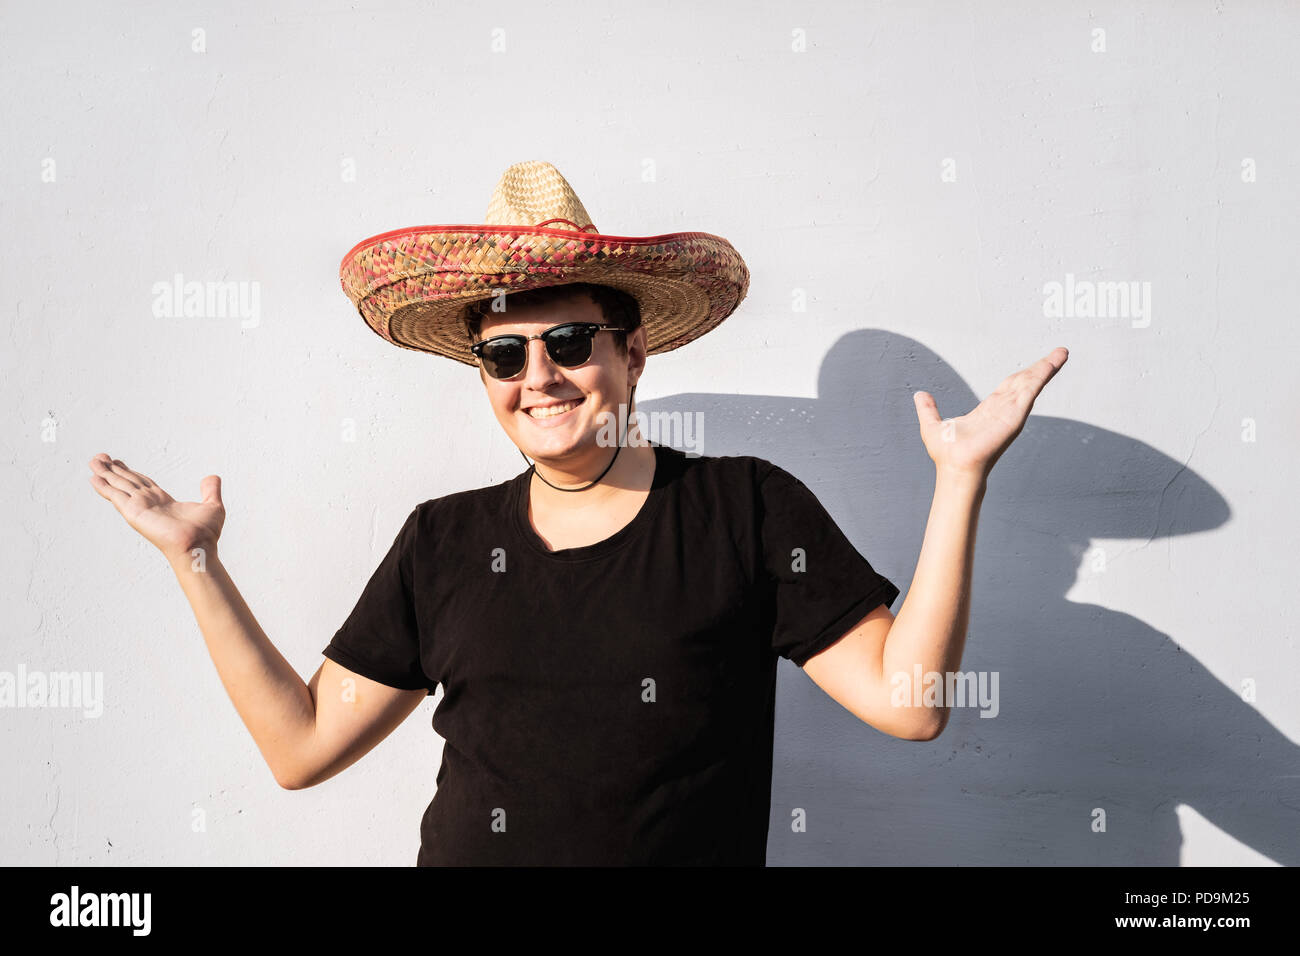 Fröhliche junge männliche Person im Sombrero. Mexiko Unabhängigkeit festliche Konzept der Mann mit nationalen Mexican Hat Stockfoto